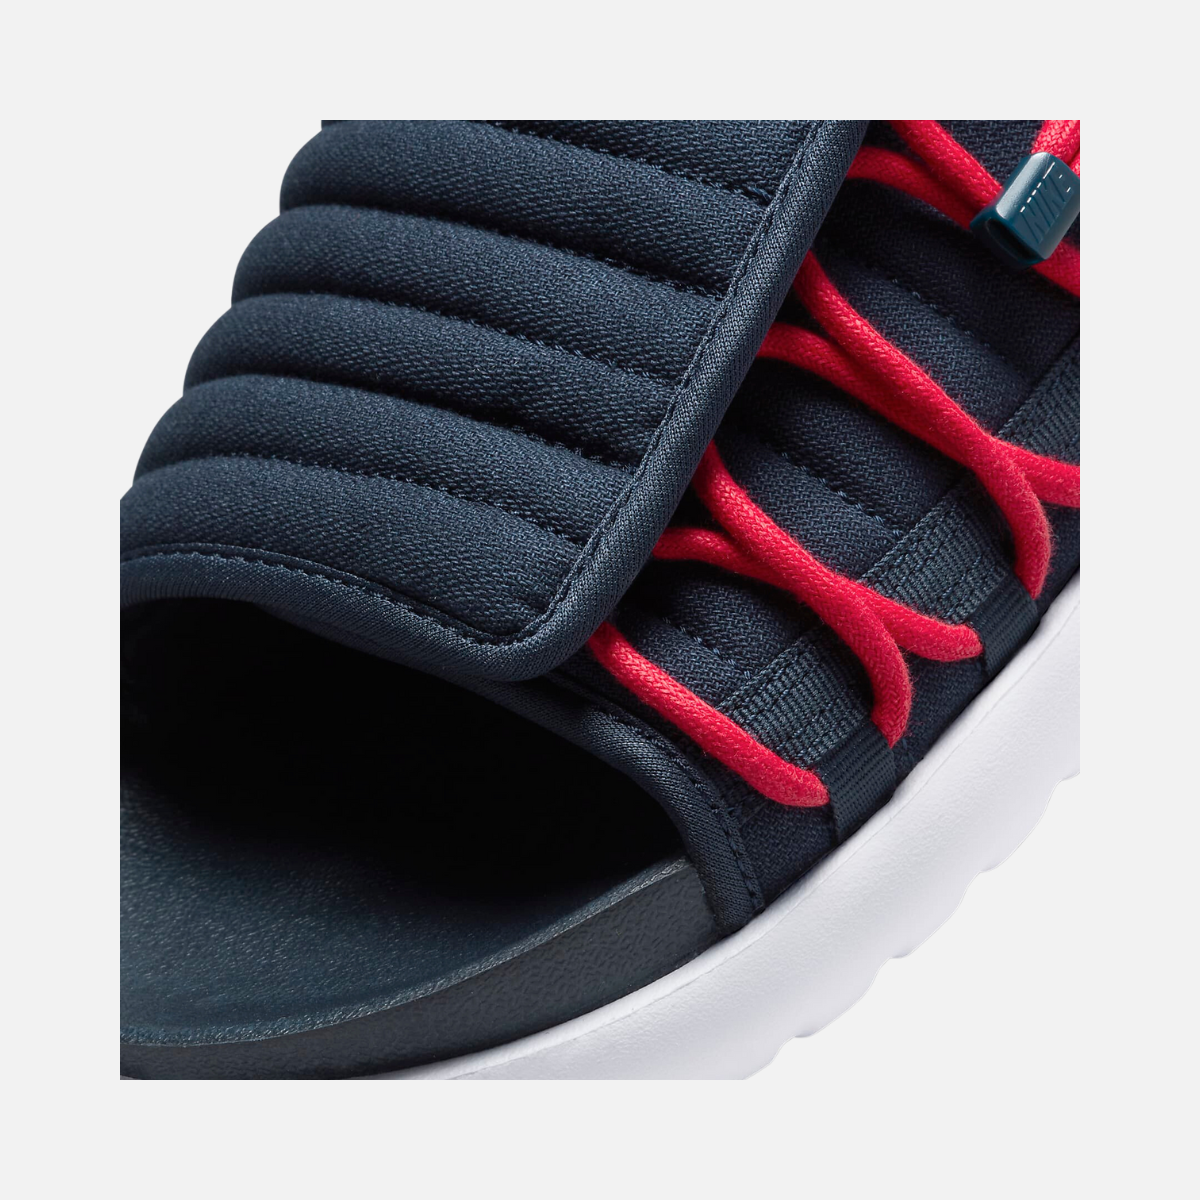 Nike Asuna 2 Men's Slides -Obsidian/University Red/White